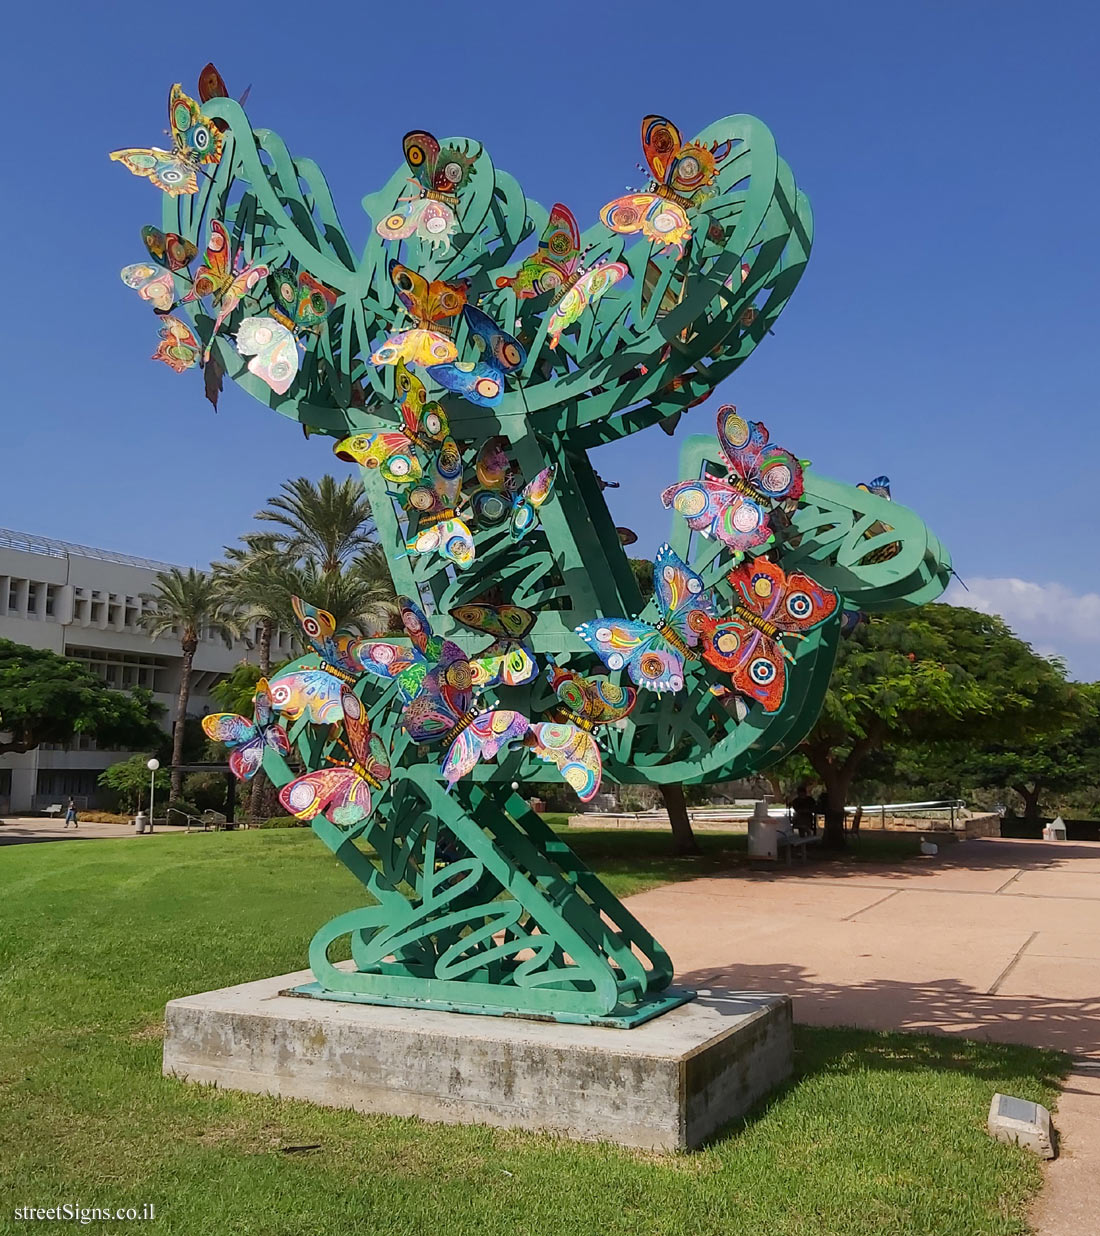 "Spirit of Freedom" - outdoor sculpture by David Gerstein - Tel Aviv University-Ramat Aviv Campus, Tel Aviv, Israel